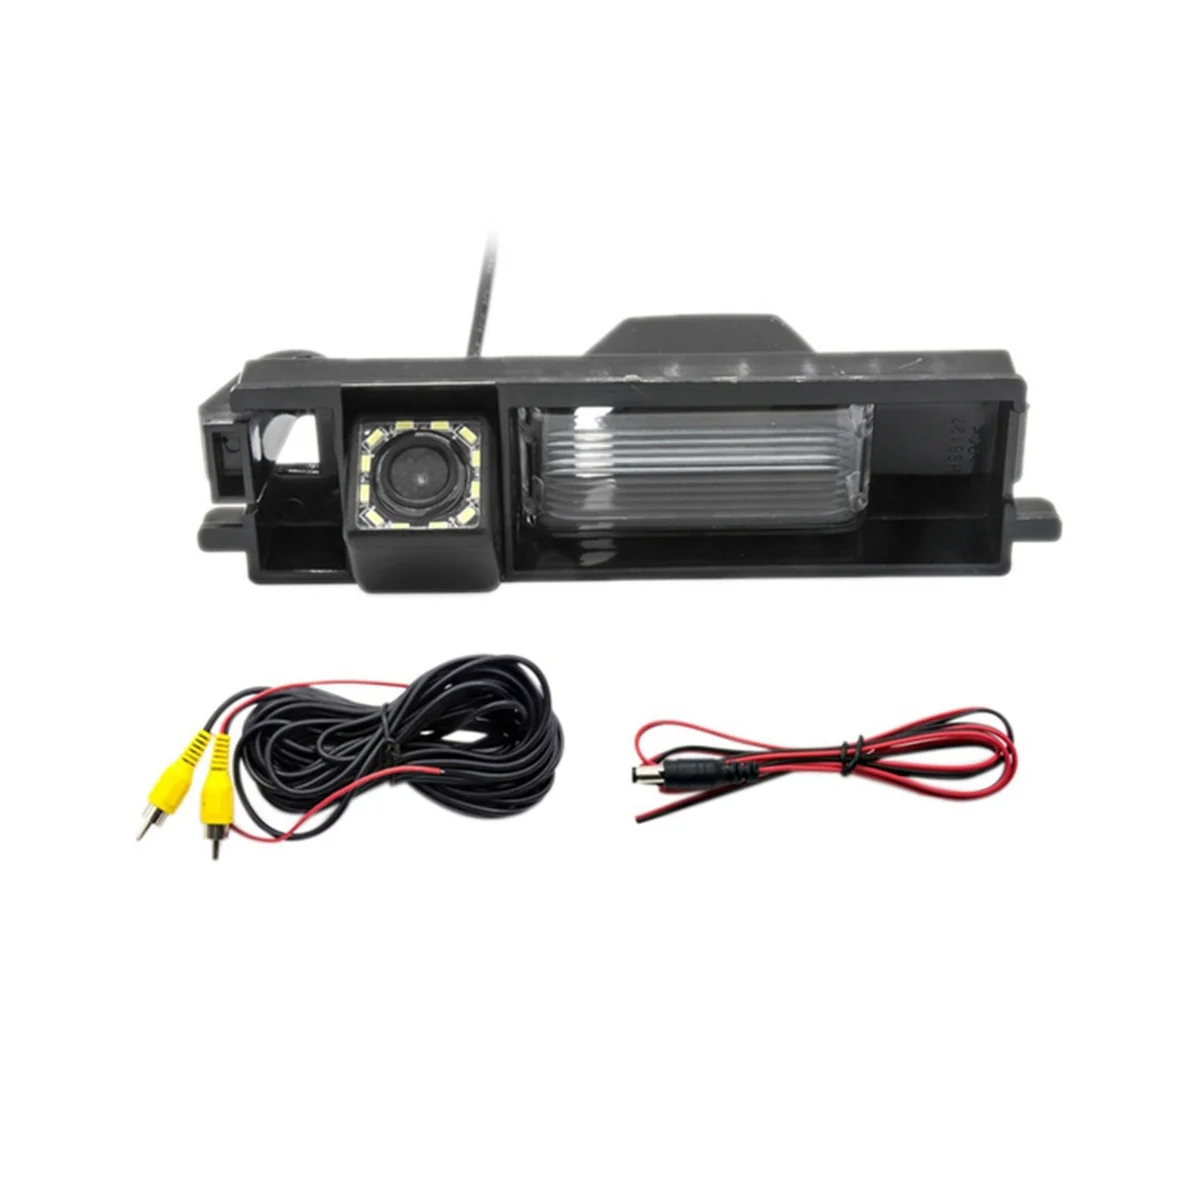 

12 LED Fixed or Dynamic Trajectory Rear View Camera for Chery Tiggo T11/Tiggo FL 2007-16 Reverse Backup Parking Monitor